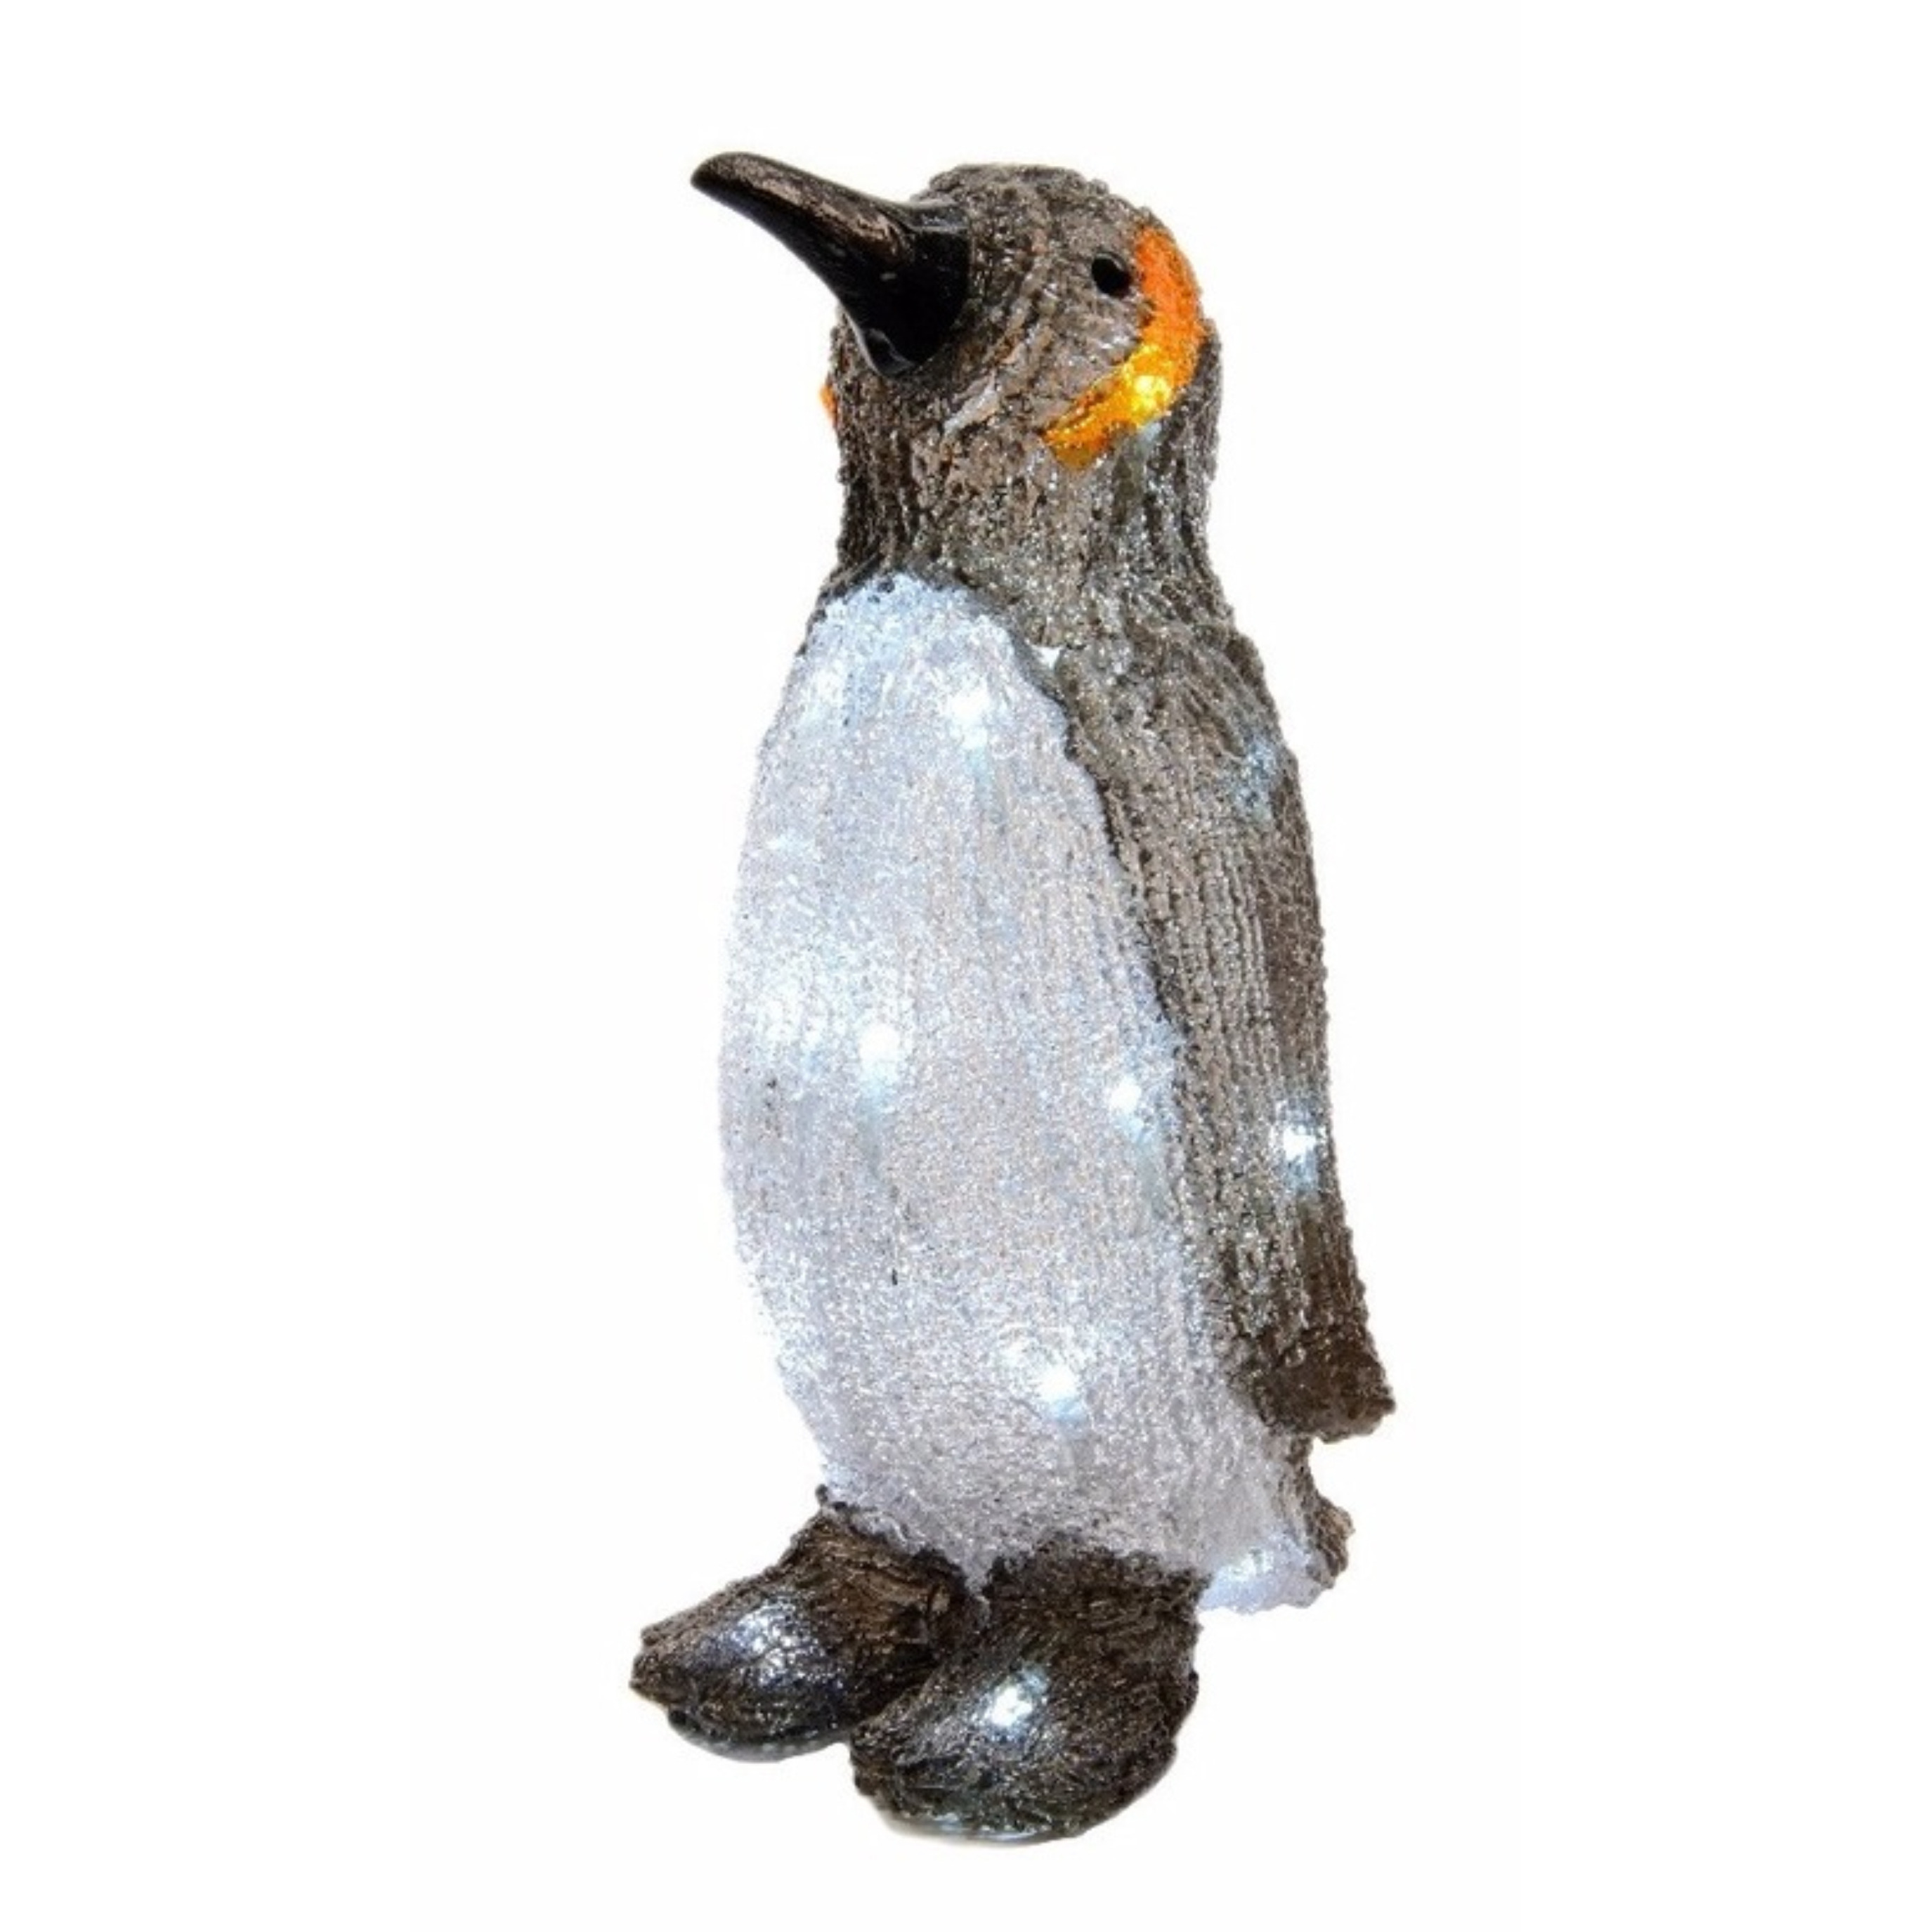 Kerstverlichting figuur pinguin 33 cm met LED verlichting